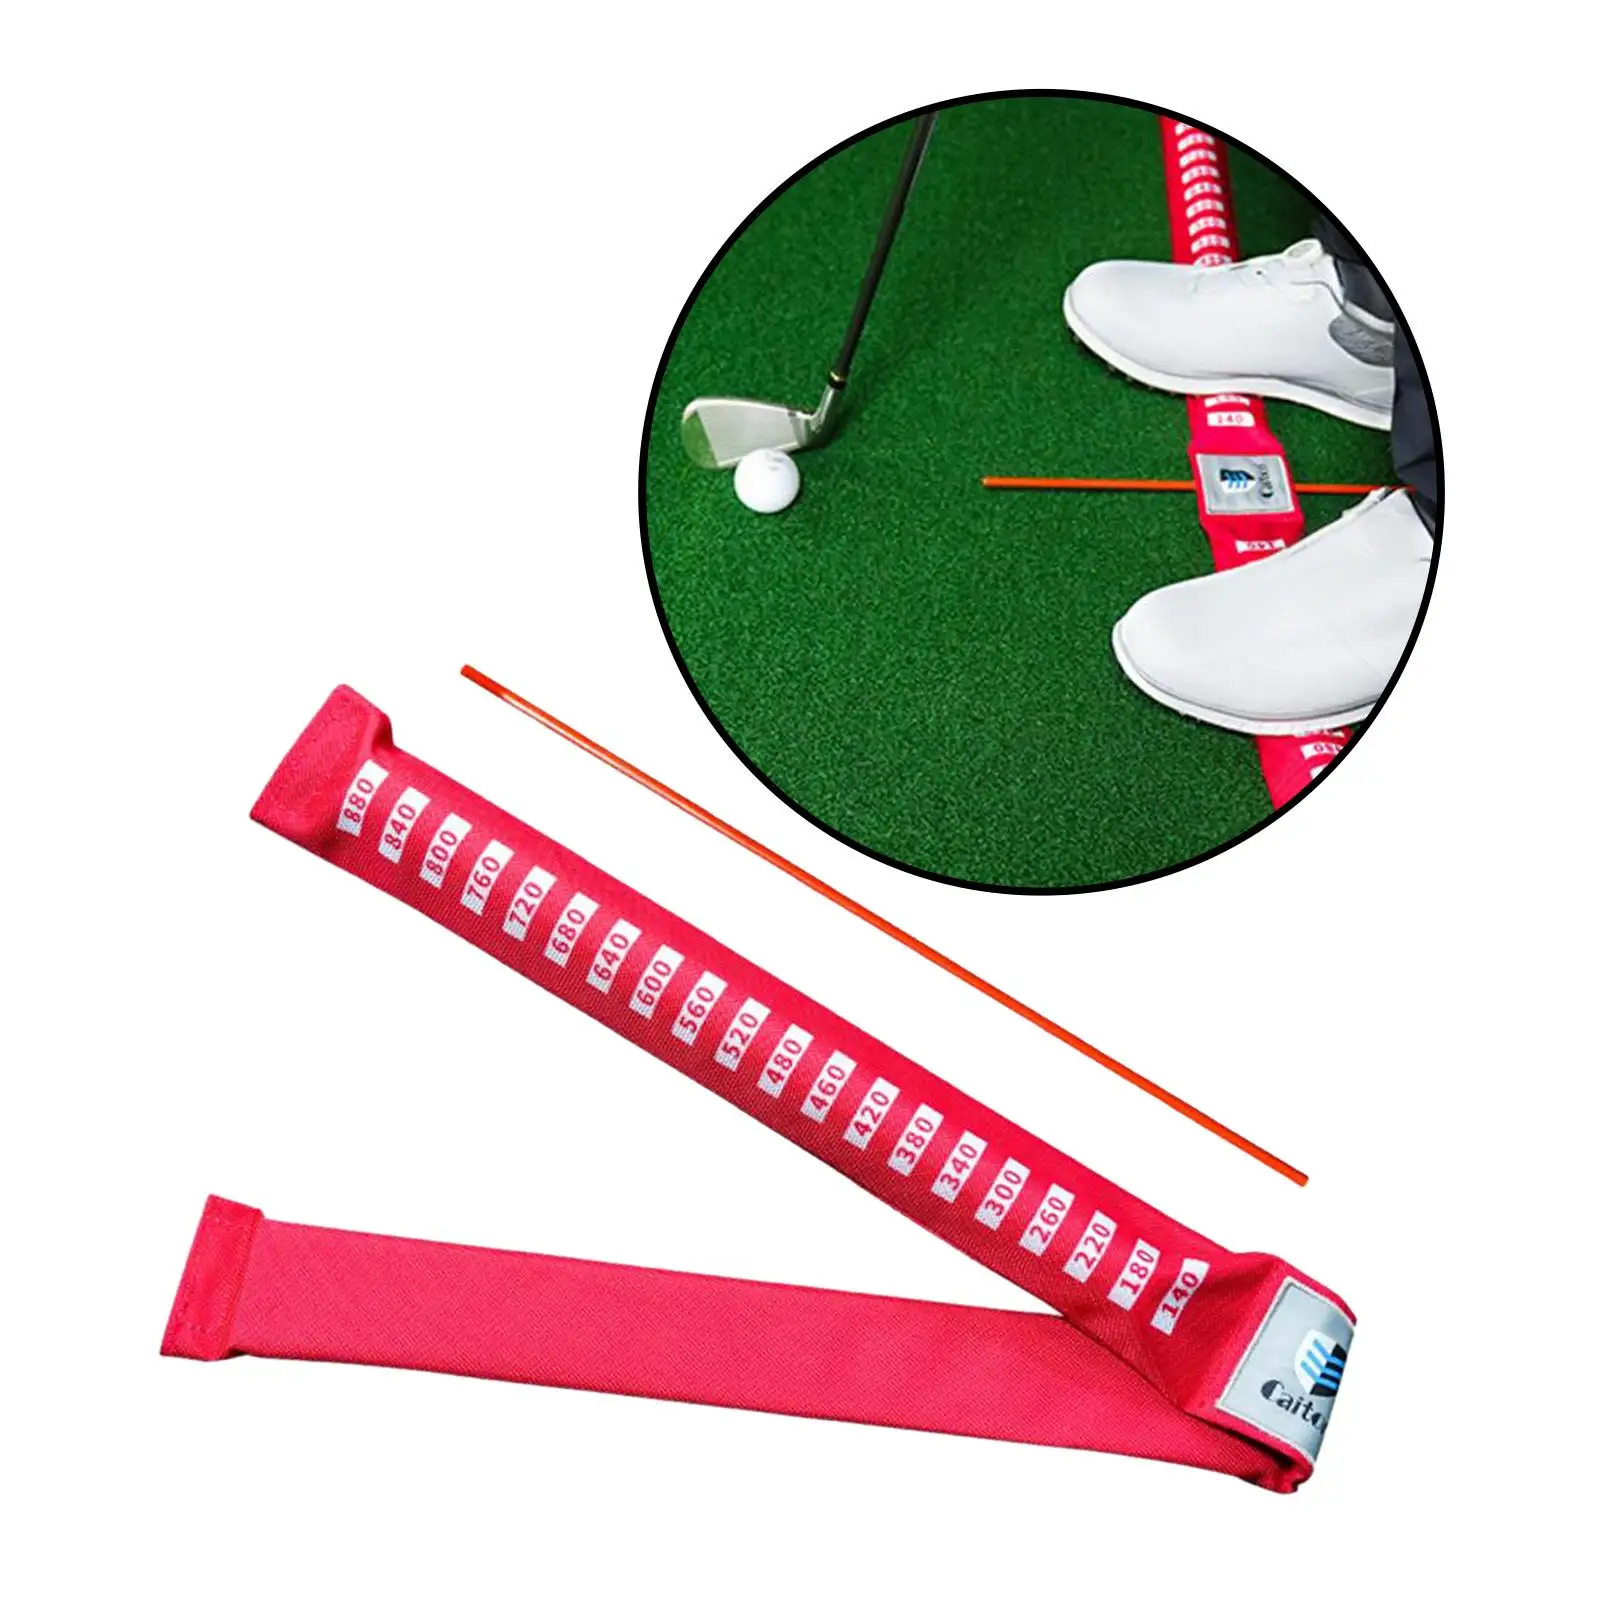 

Тренажер для игры в гольф для улучшения баланса и стабилизации осанки ног